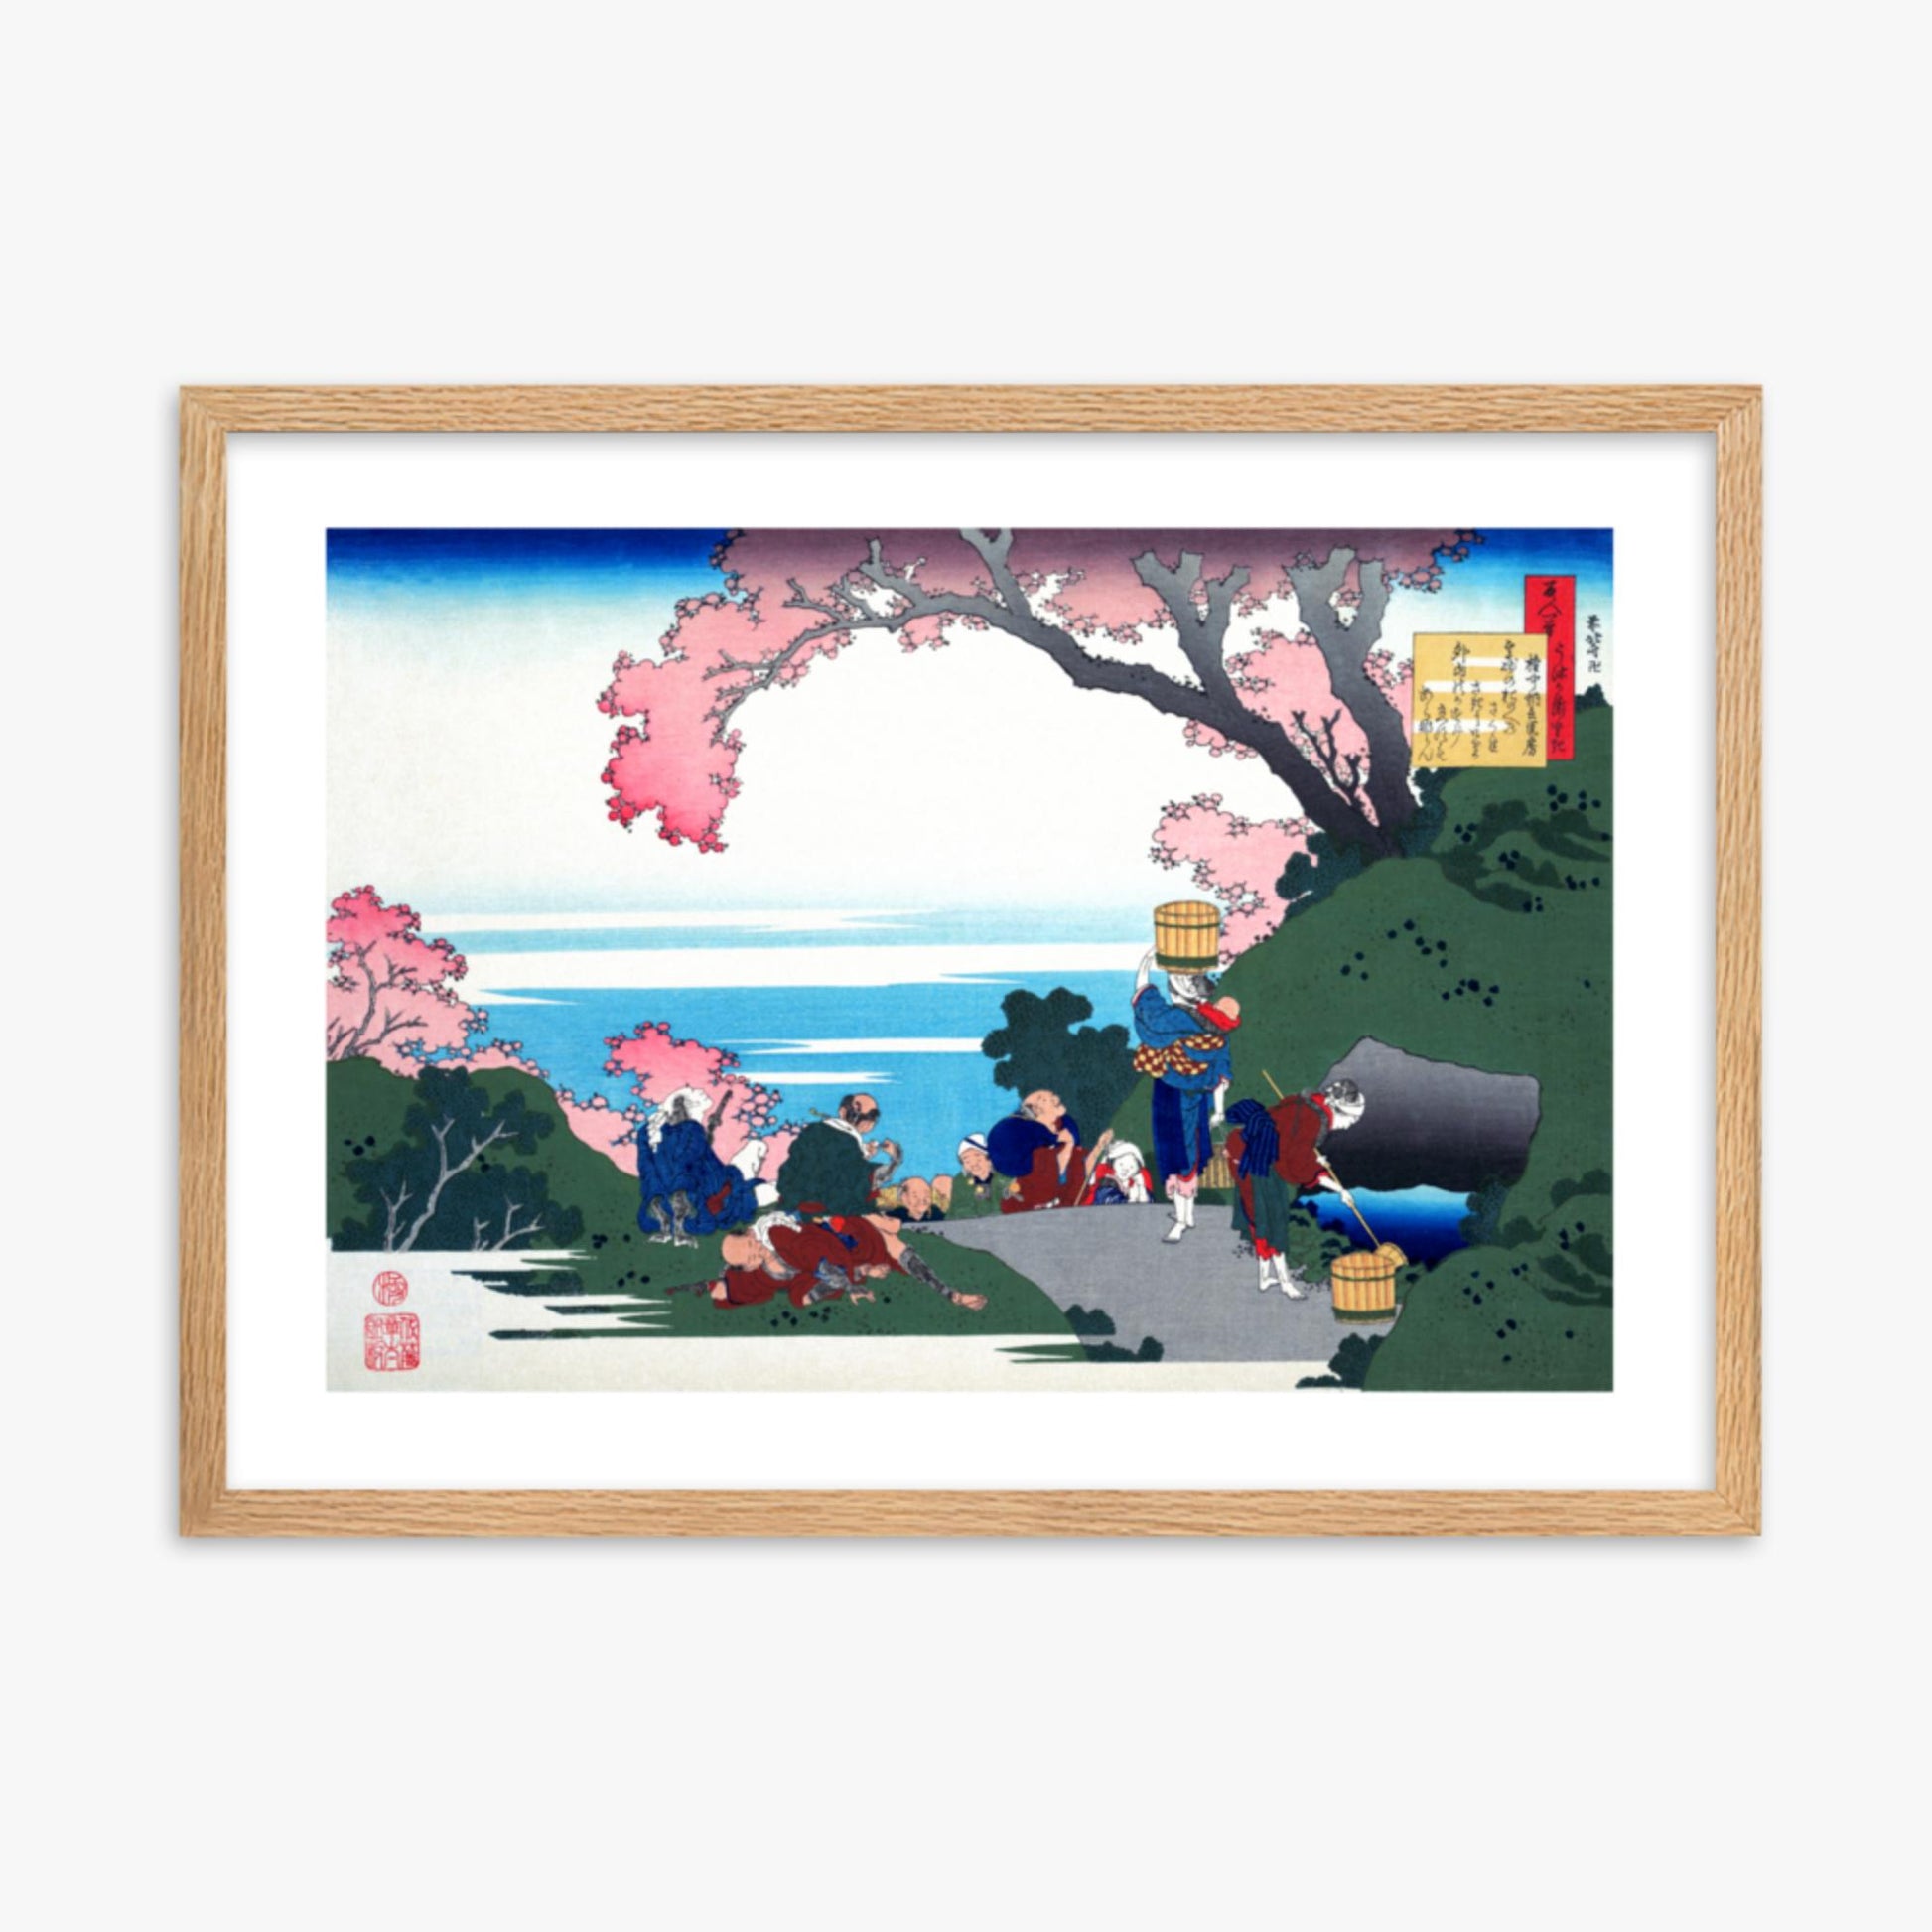 Katsushika Hokusai - Poem by Gon-chûnagon Masafusa 50x70 cm Poster With Oak Frame